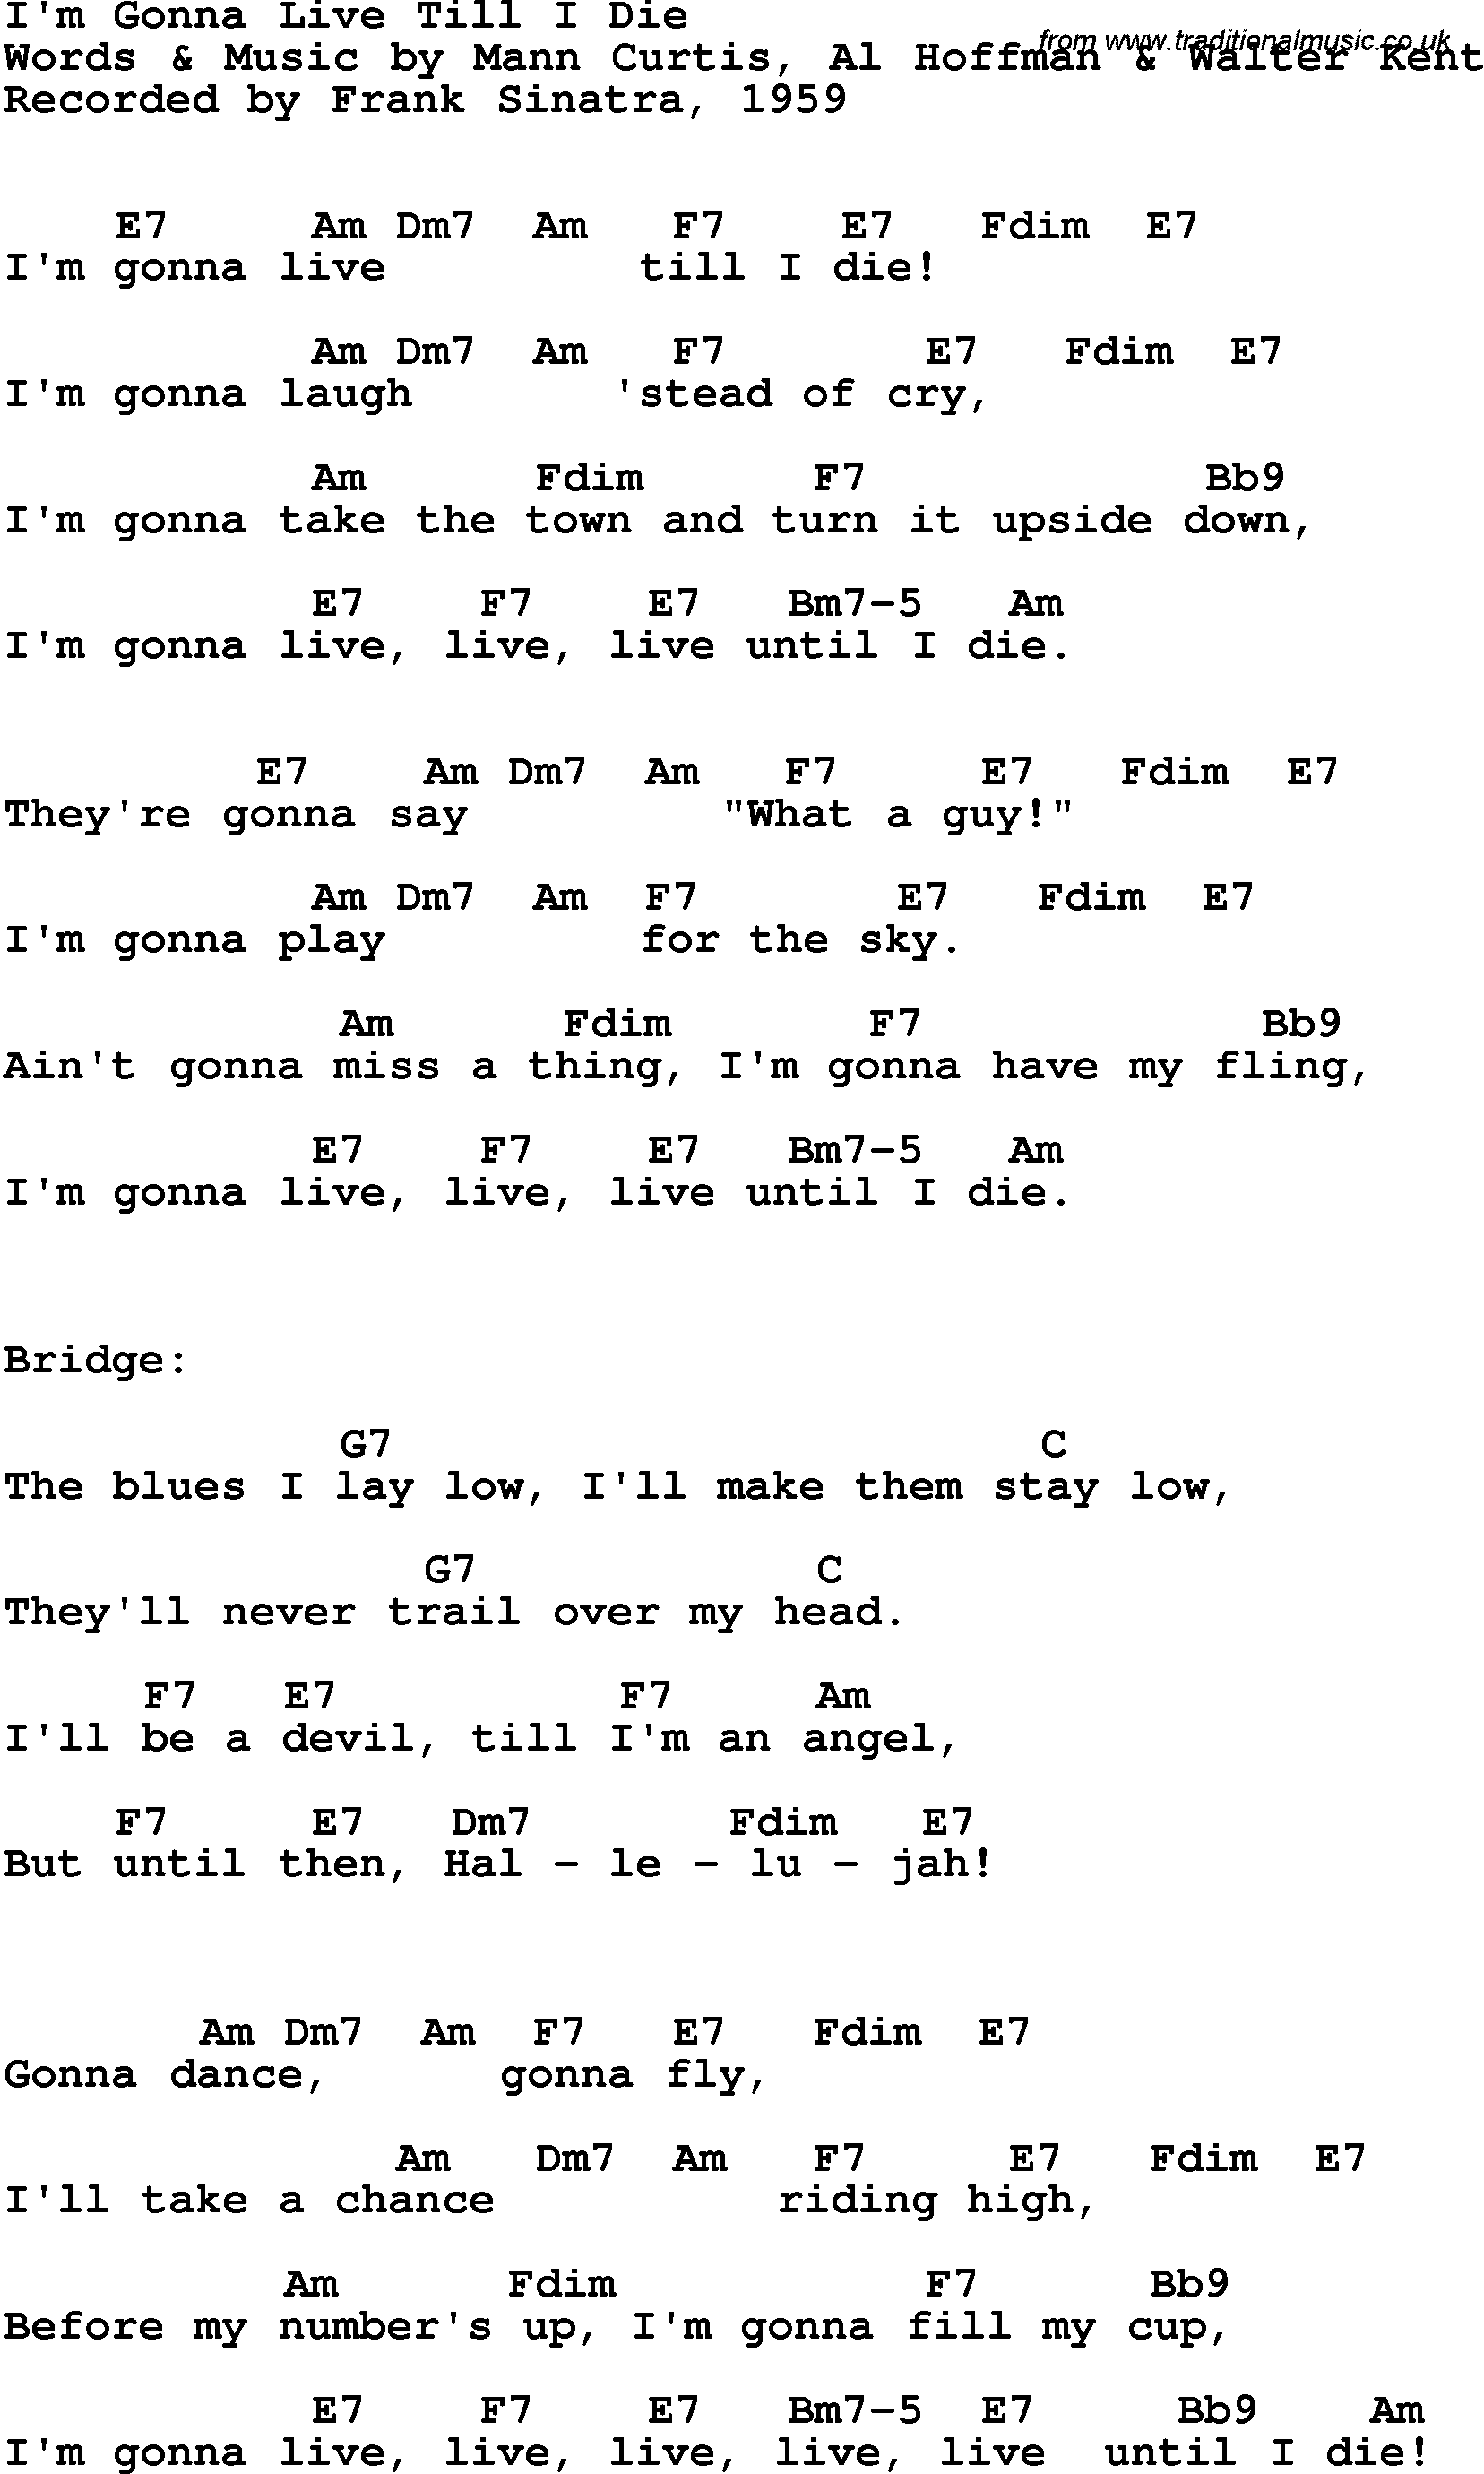 Song Lyrics with guitar chords for I'm Gonna Live Til I Die - Frank Sinatra, 1959